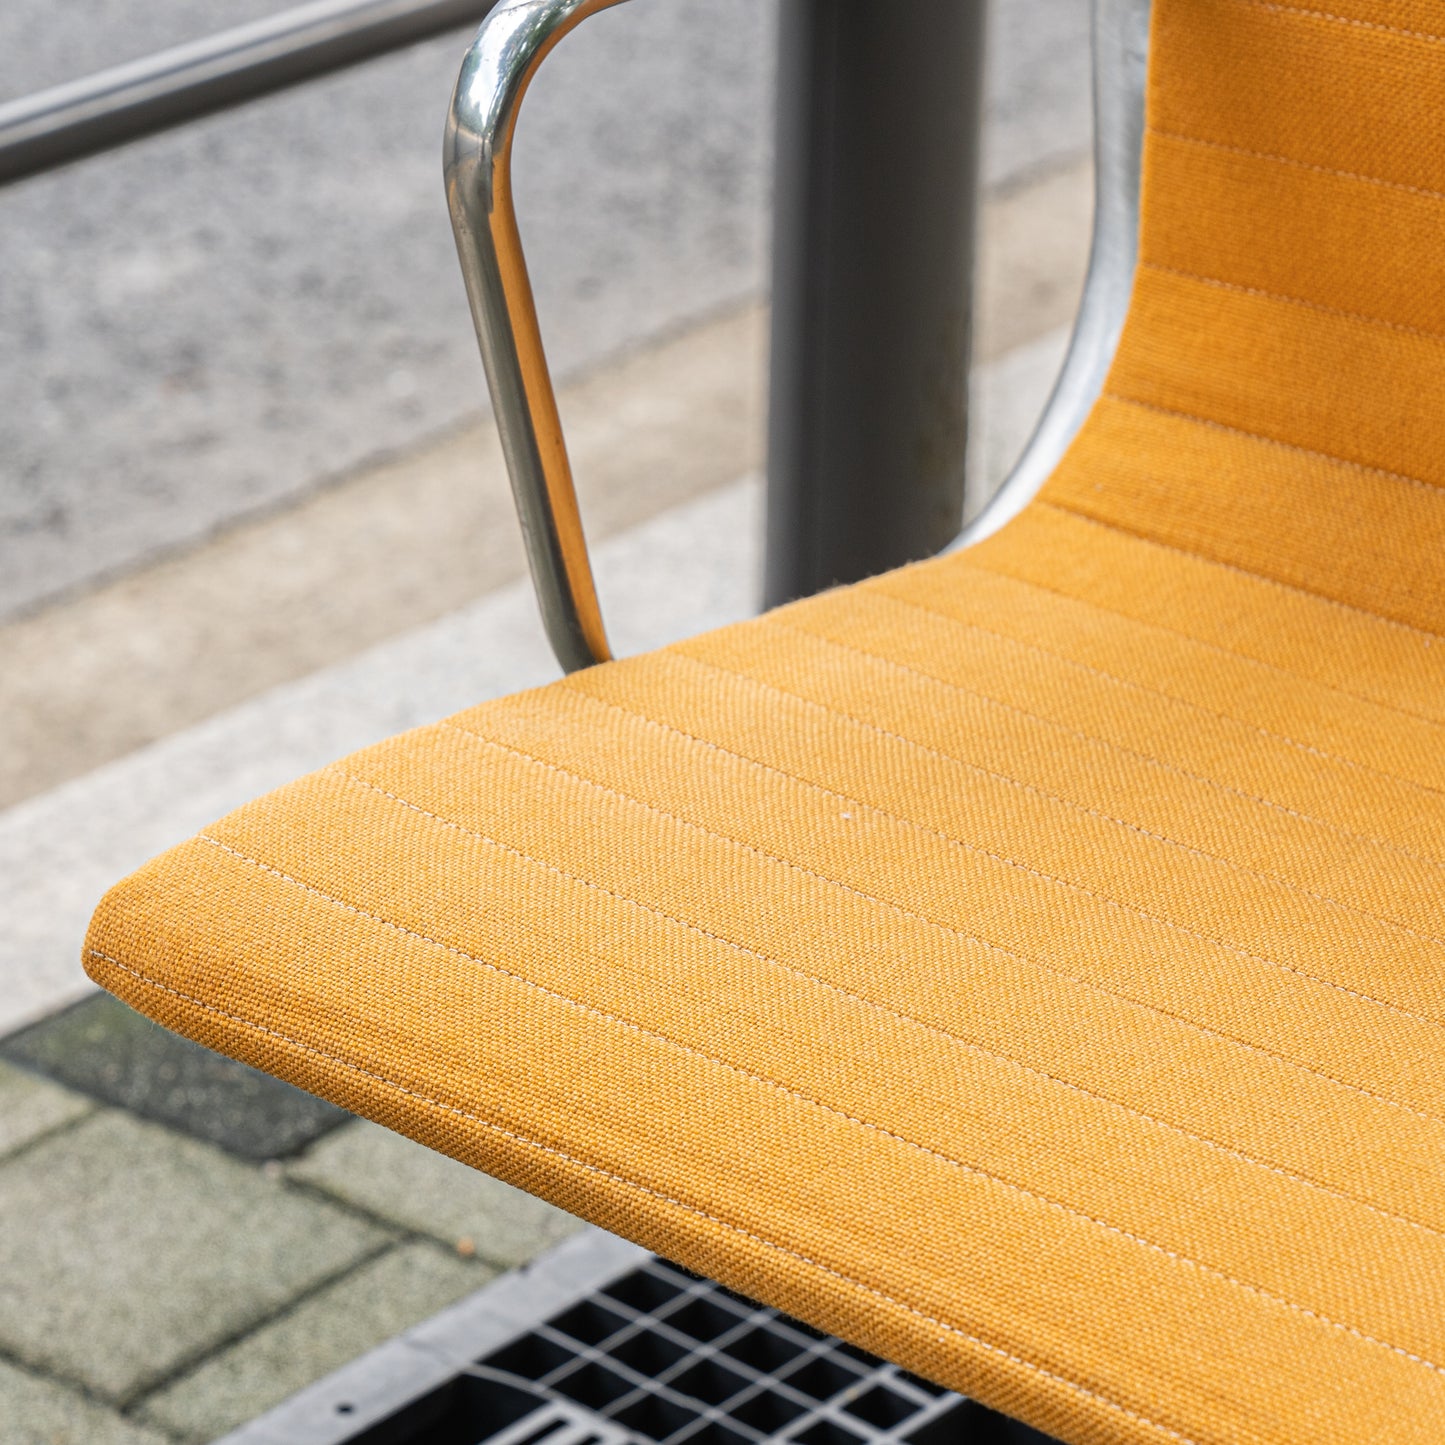 (LOT 03) Eames Aluminum Group Management Chair (Orange Fabric)